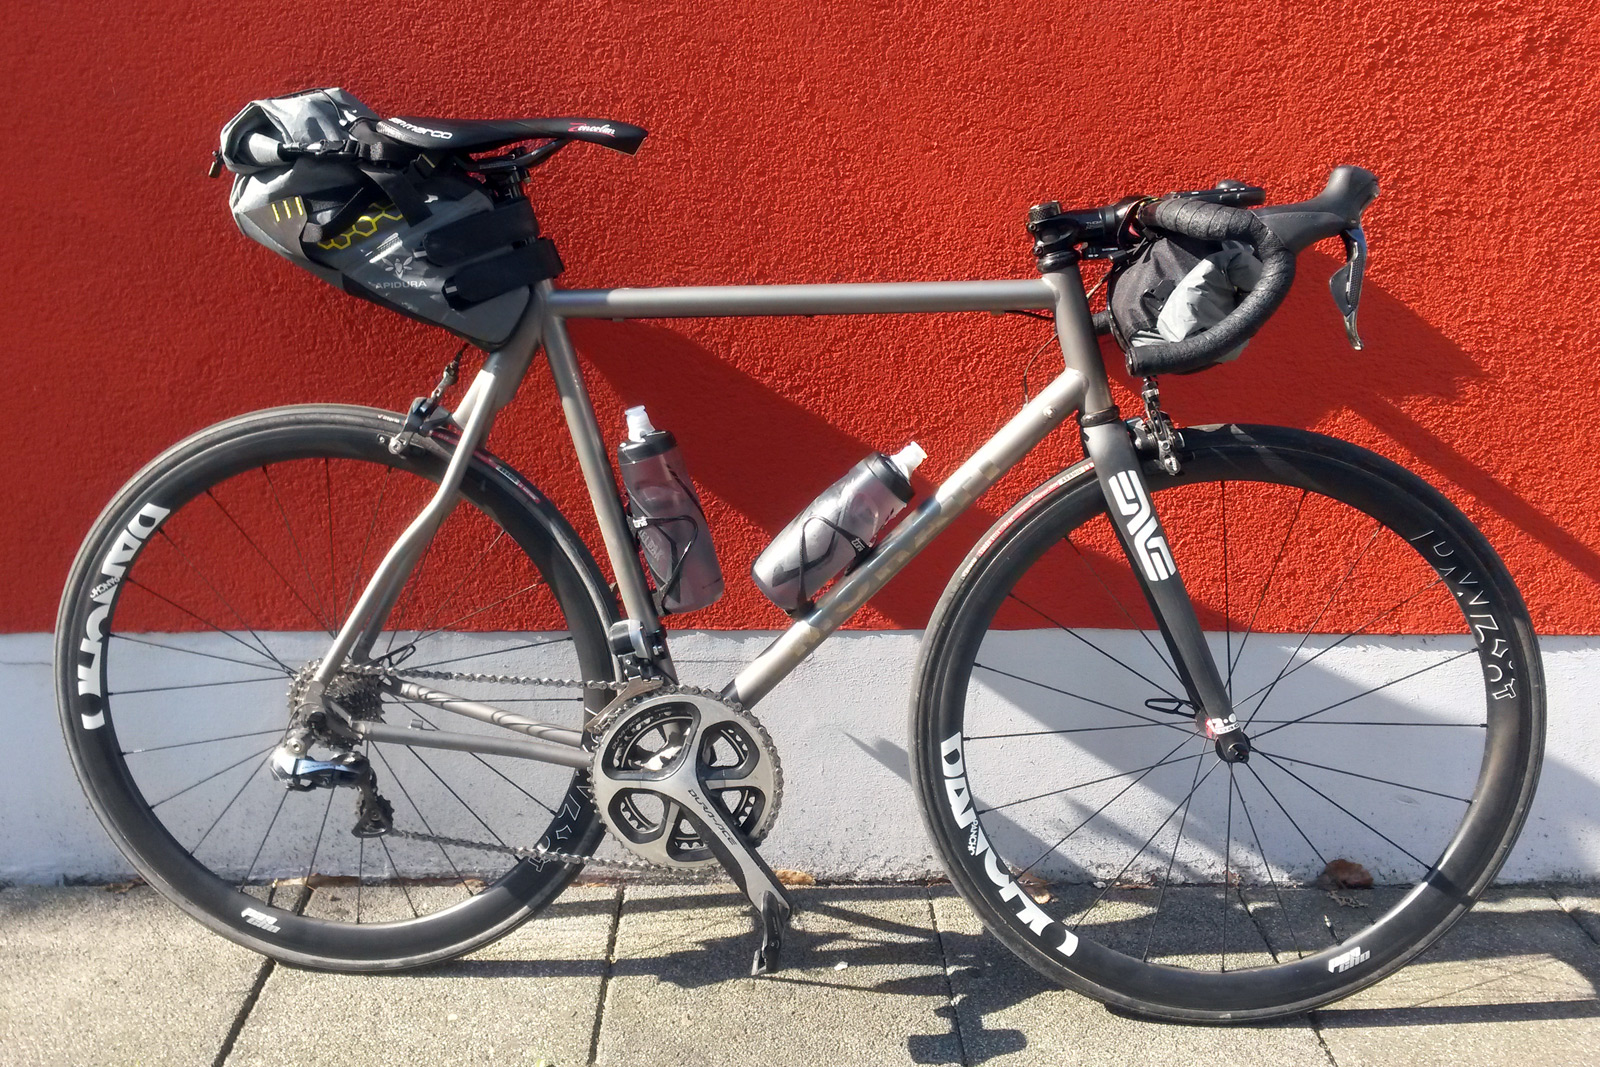 Review: Apidura City Backpack minimalist bike commuter tech - Bikerumor